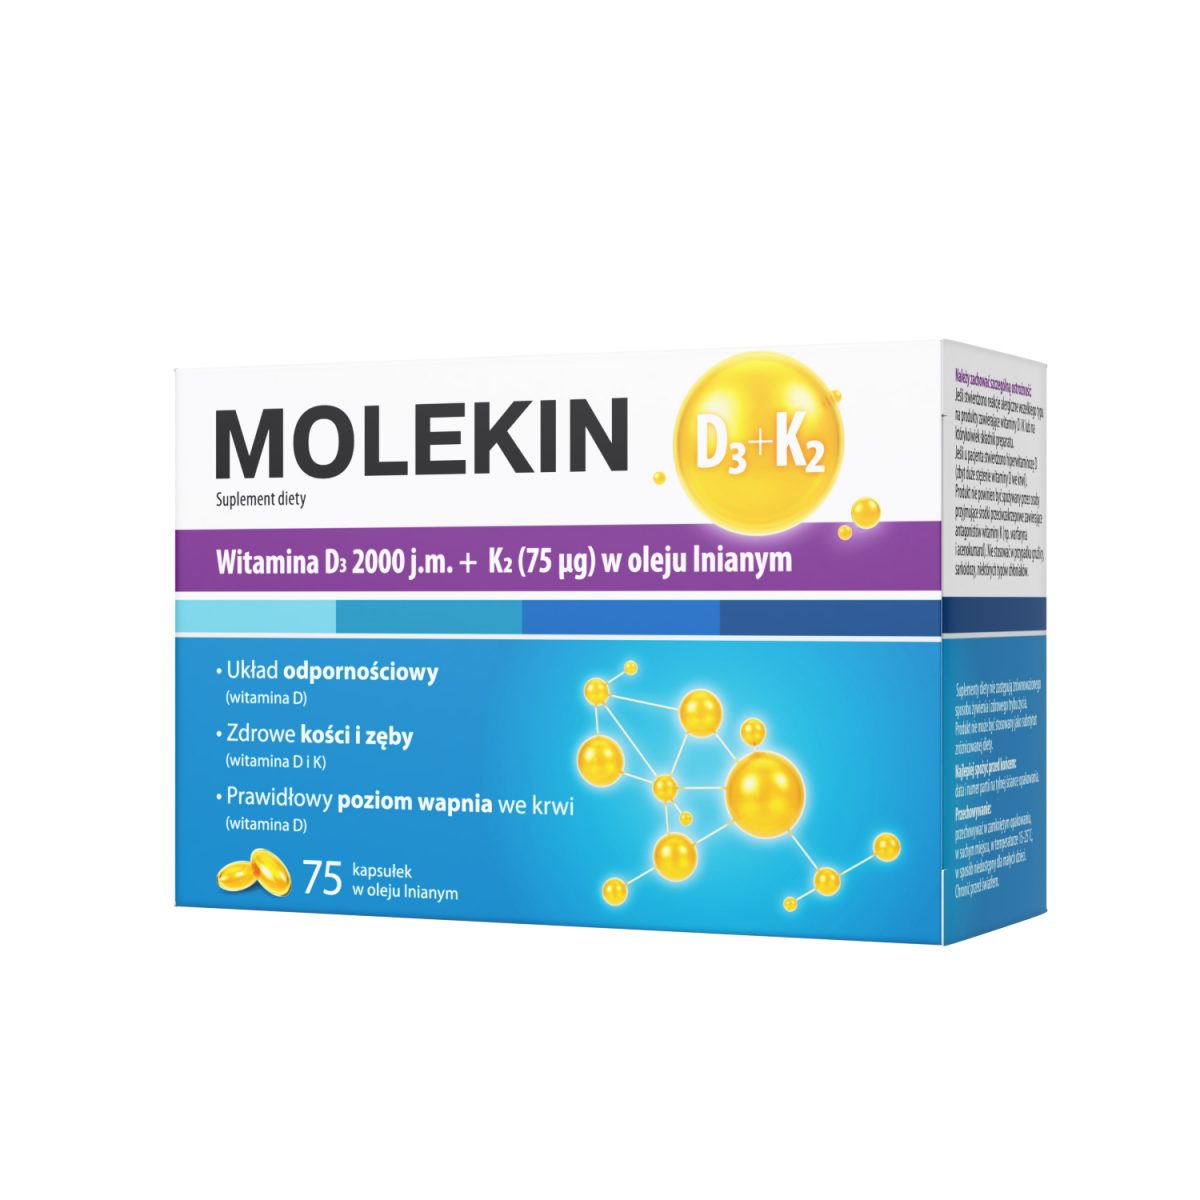 molekin d3+k2